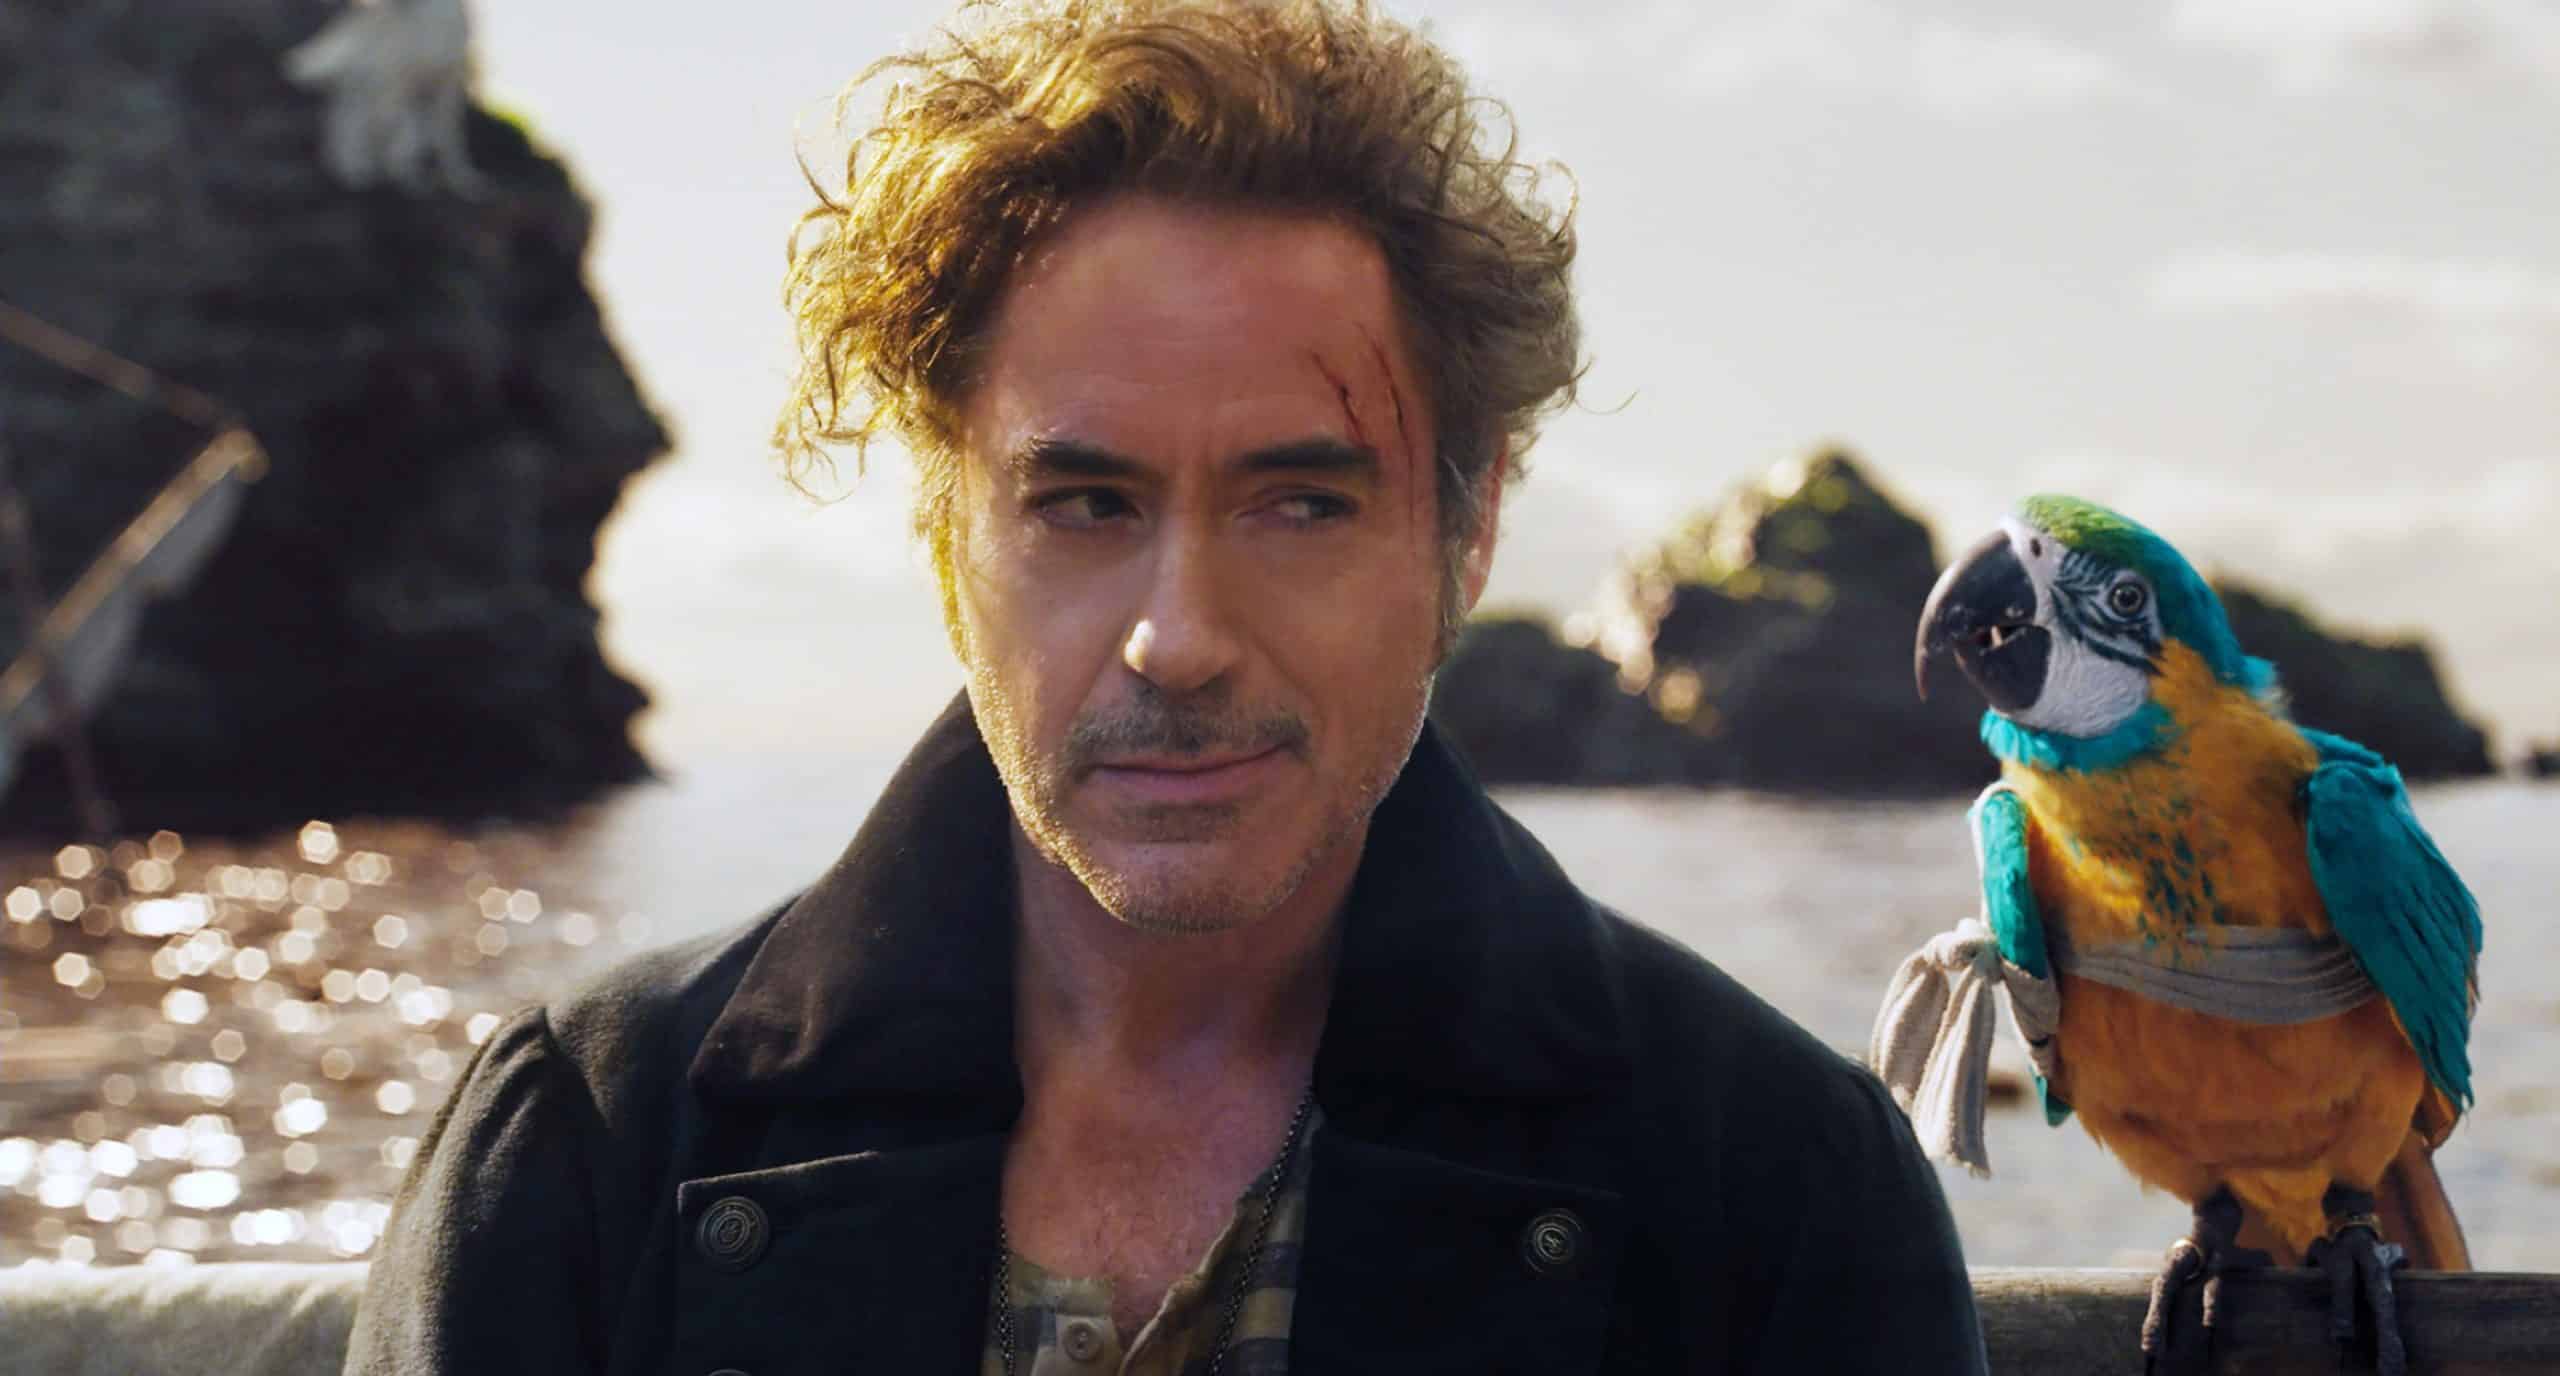 DOLITTLE, from left: Robert Downey Jr. as Dr. John Dolittle, parrot Polynesia